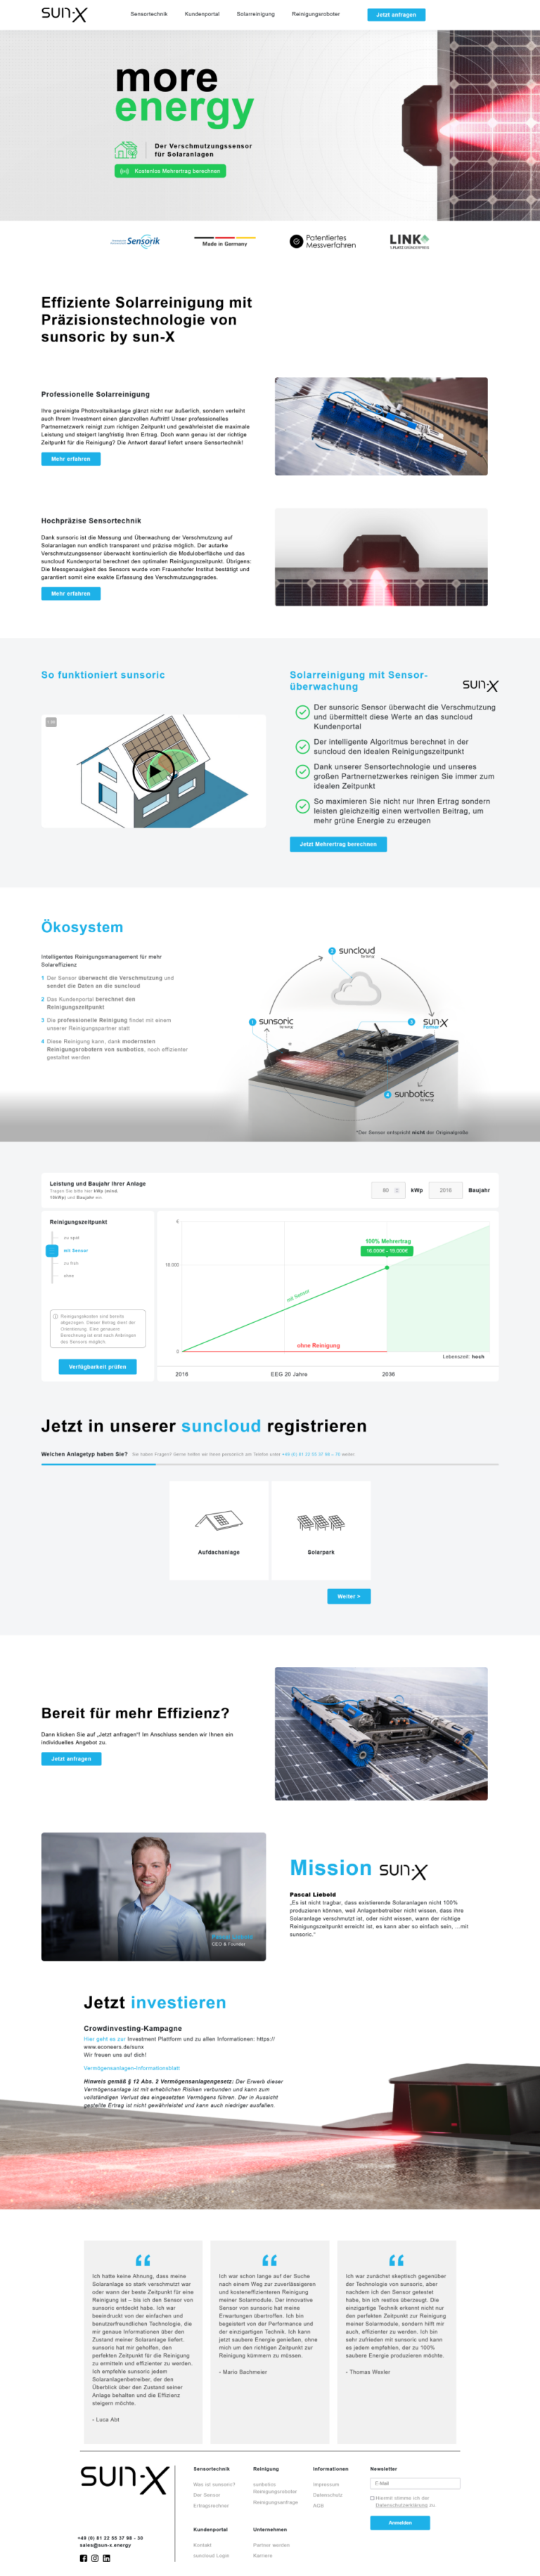 sun-X Webseite komplett Screenshot